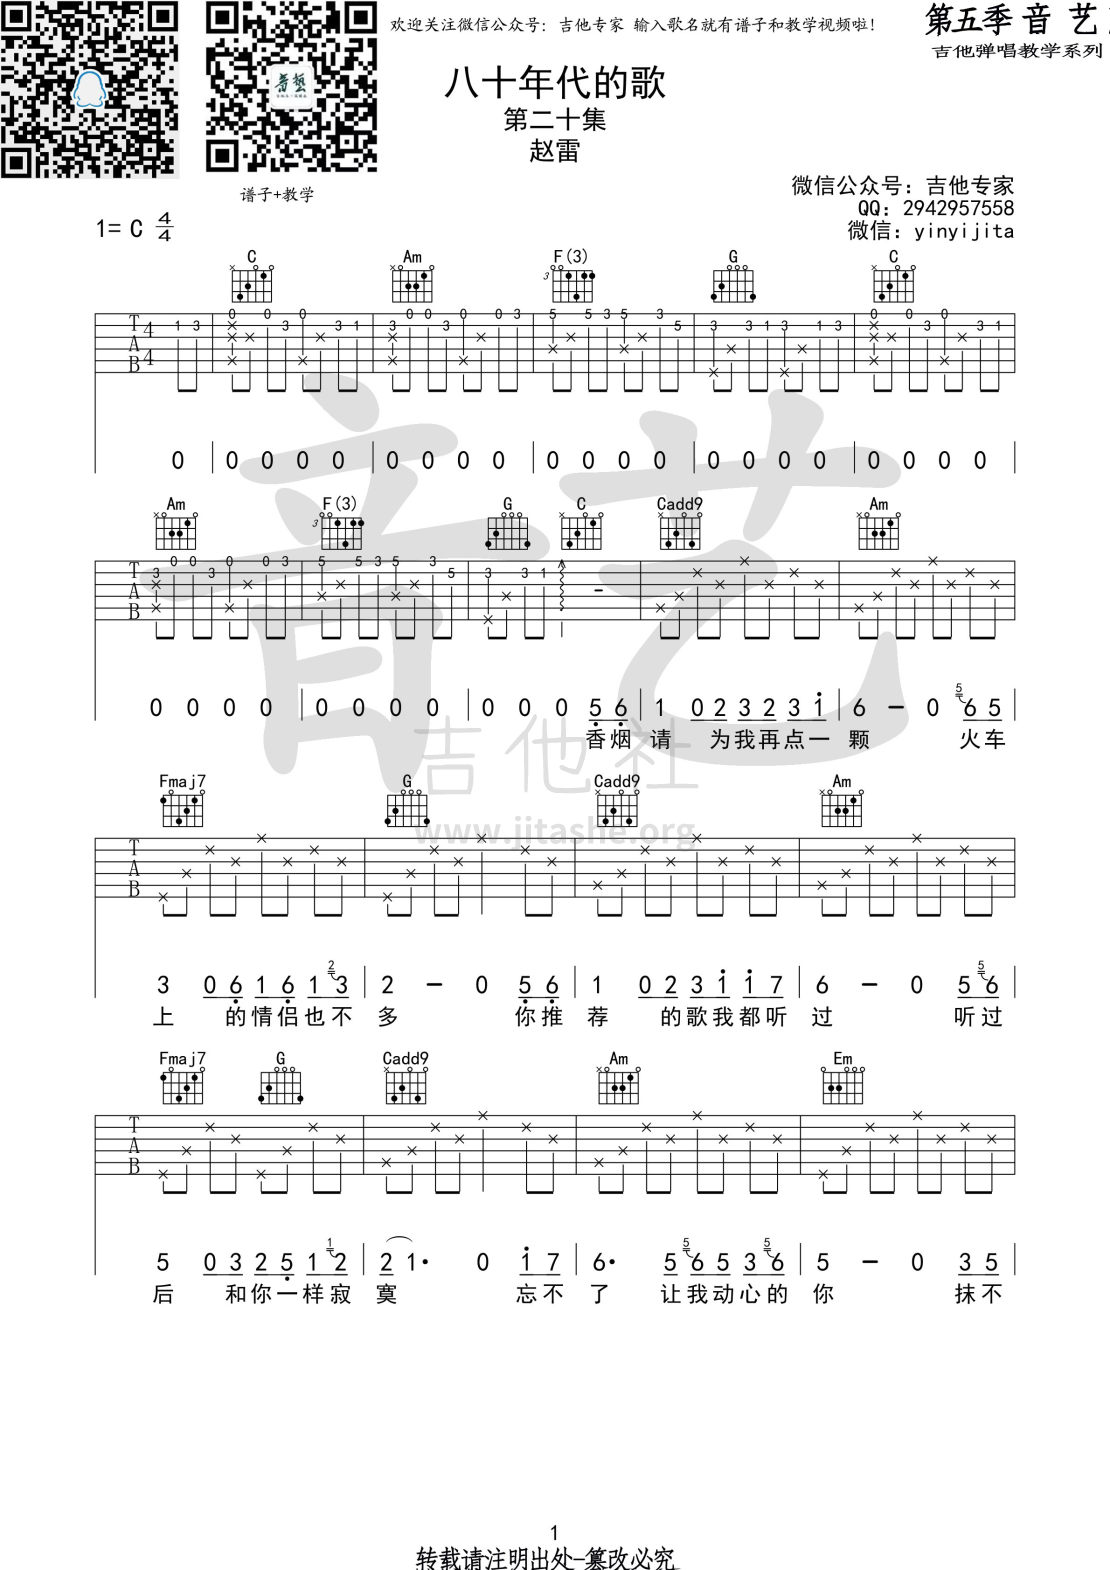 八十年代的歌吉他谱(图片谱,弹唱,民谣)_赵雷(雷子)_八十年代的歌1 第五期 第二十集.jpg